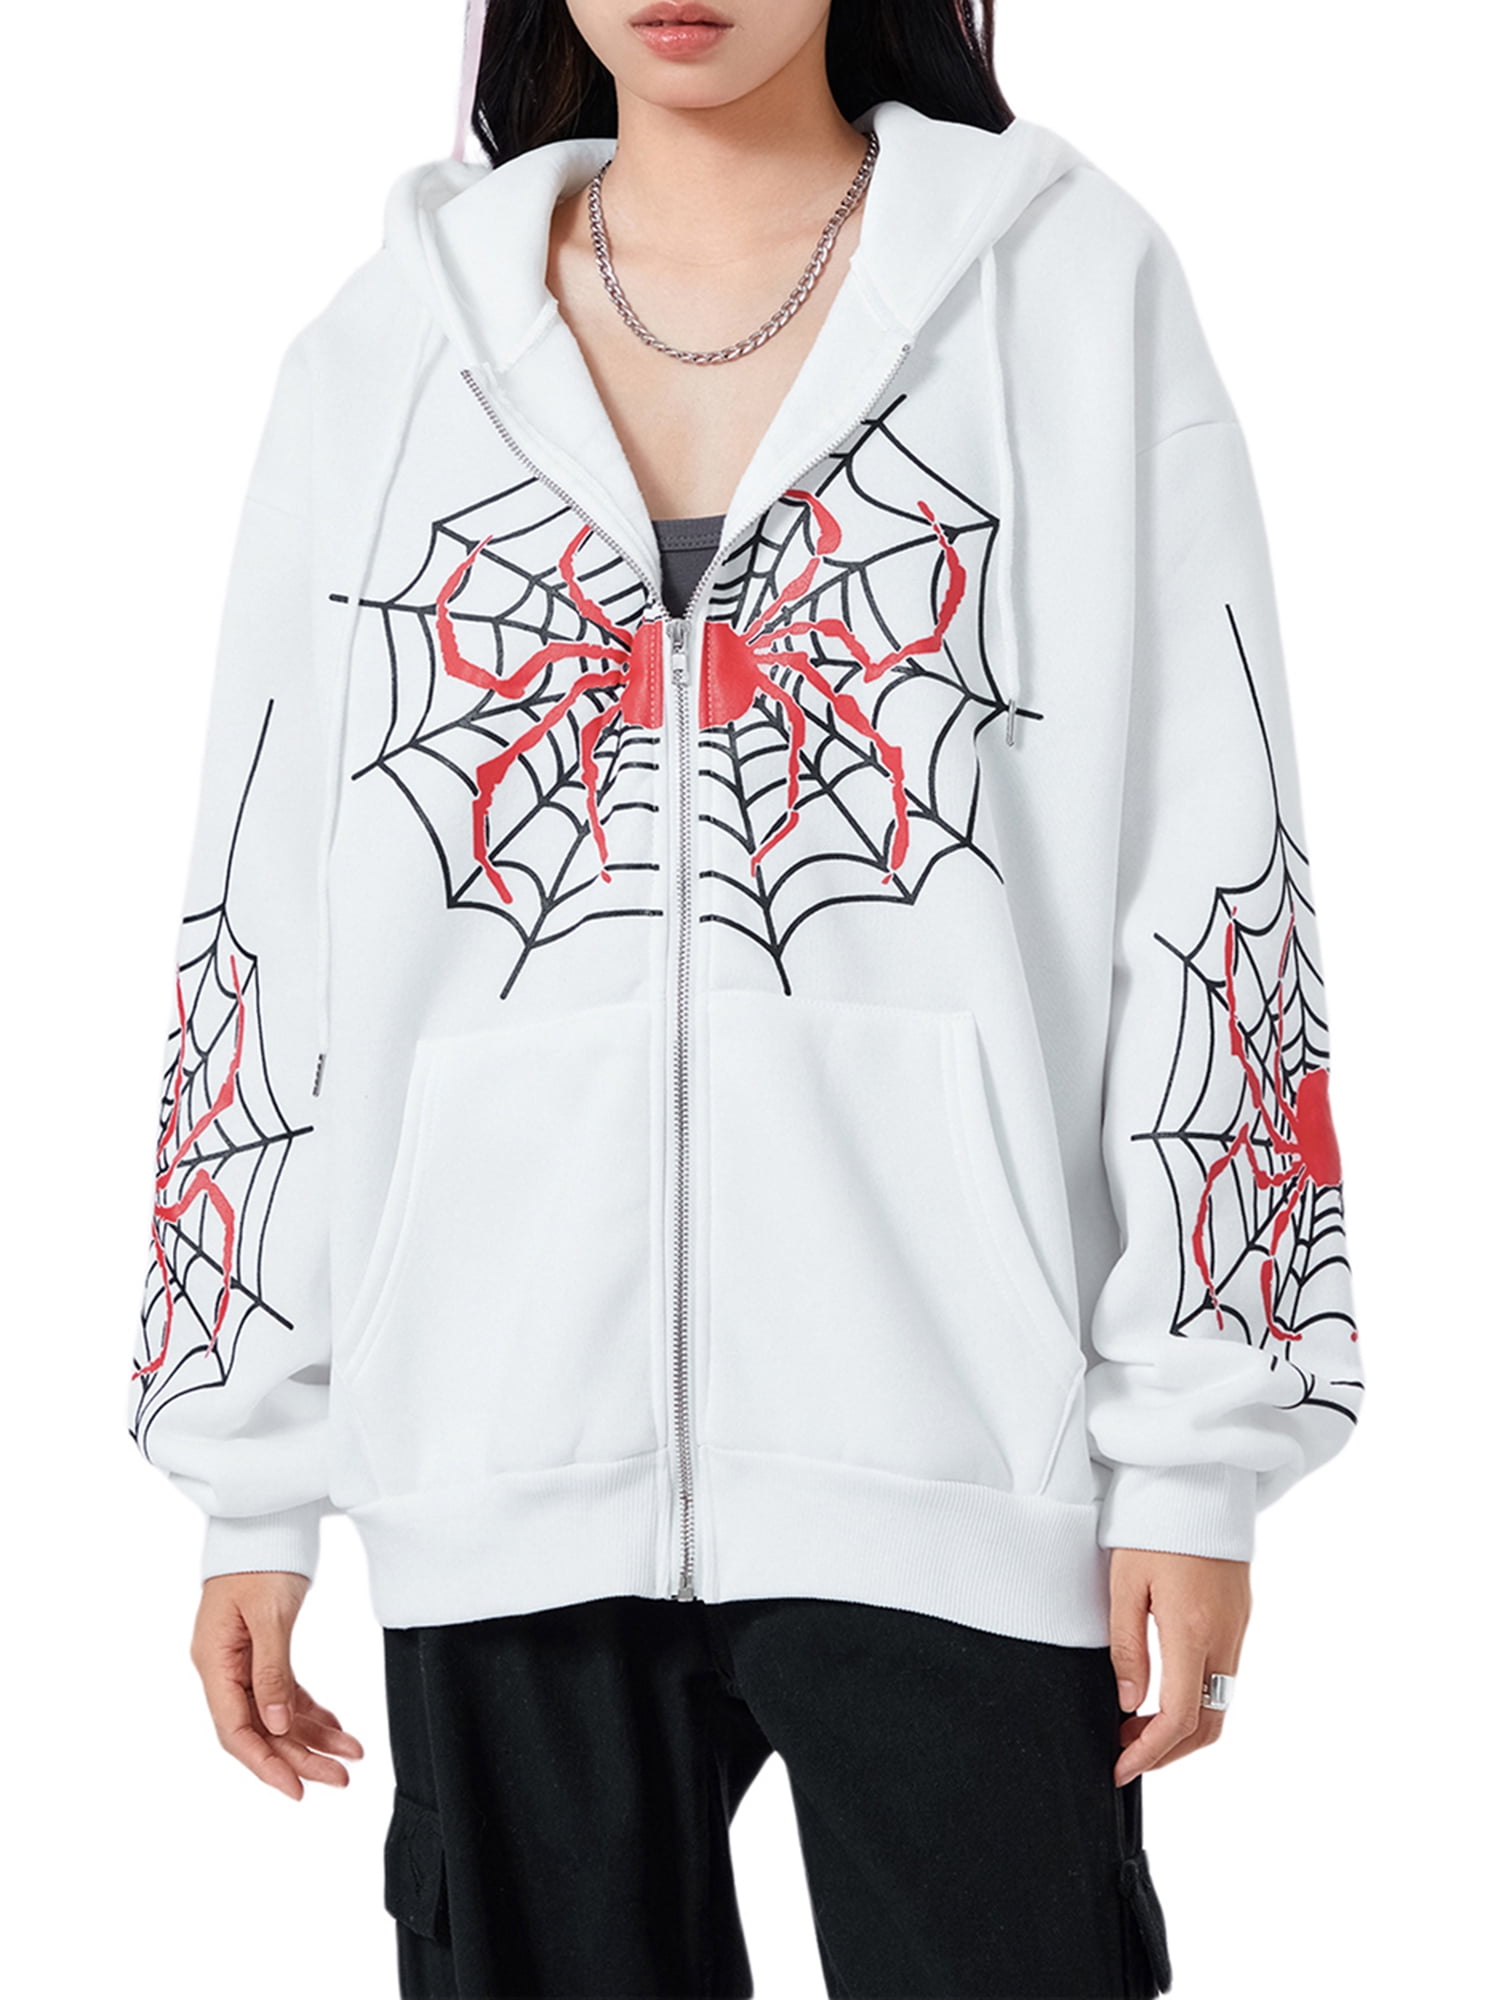 Women’s spider hoodie – Stylish and nice women’s sweatshirt